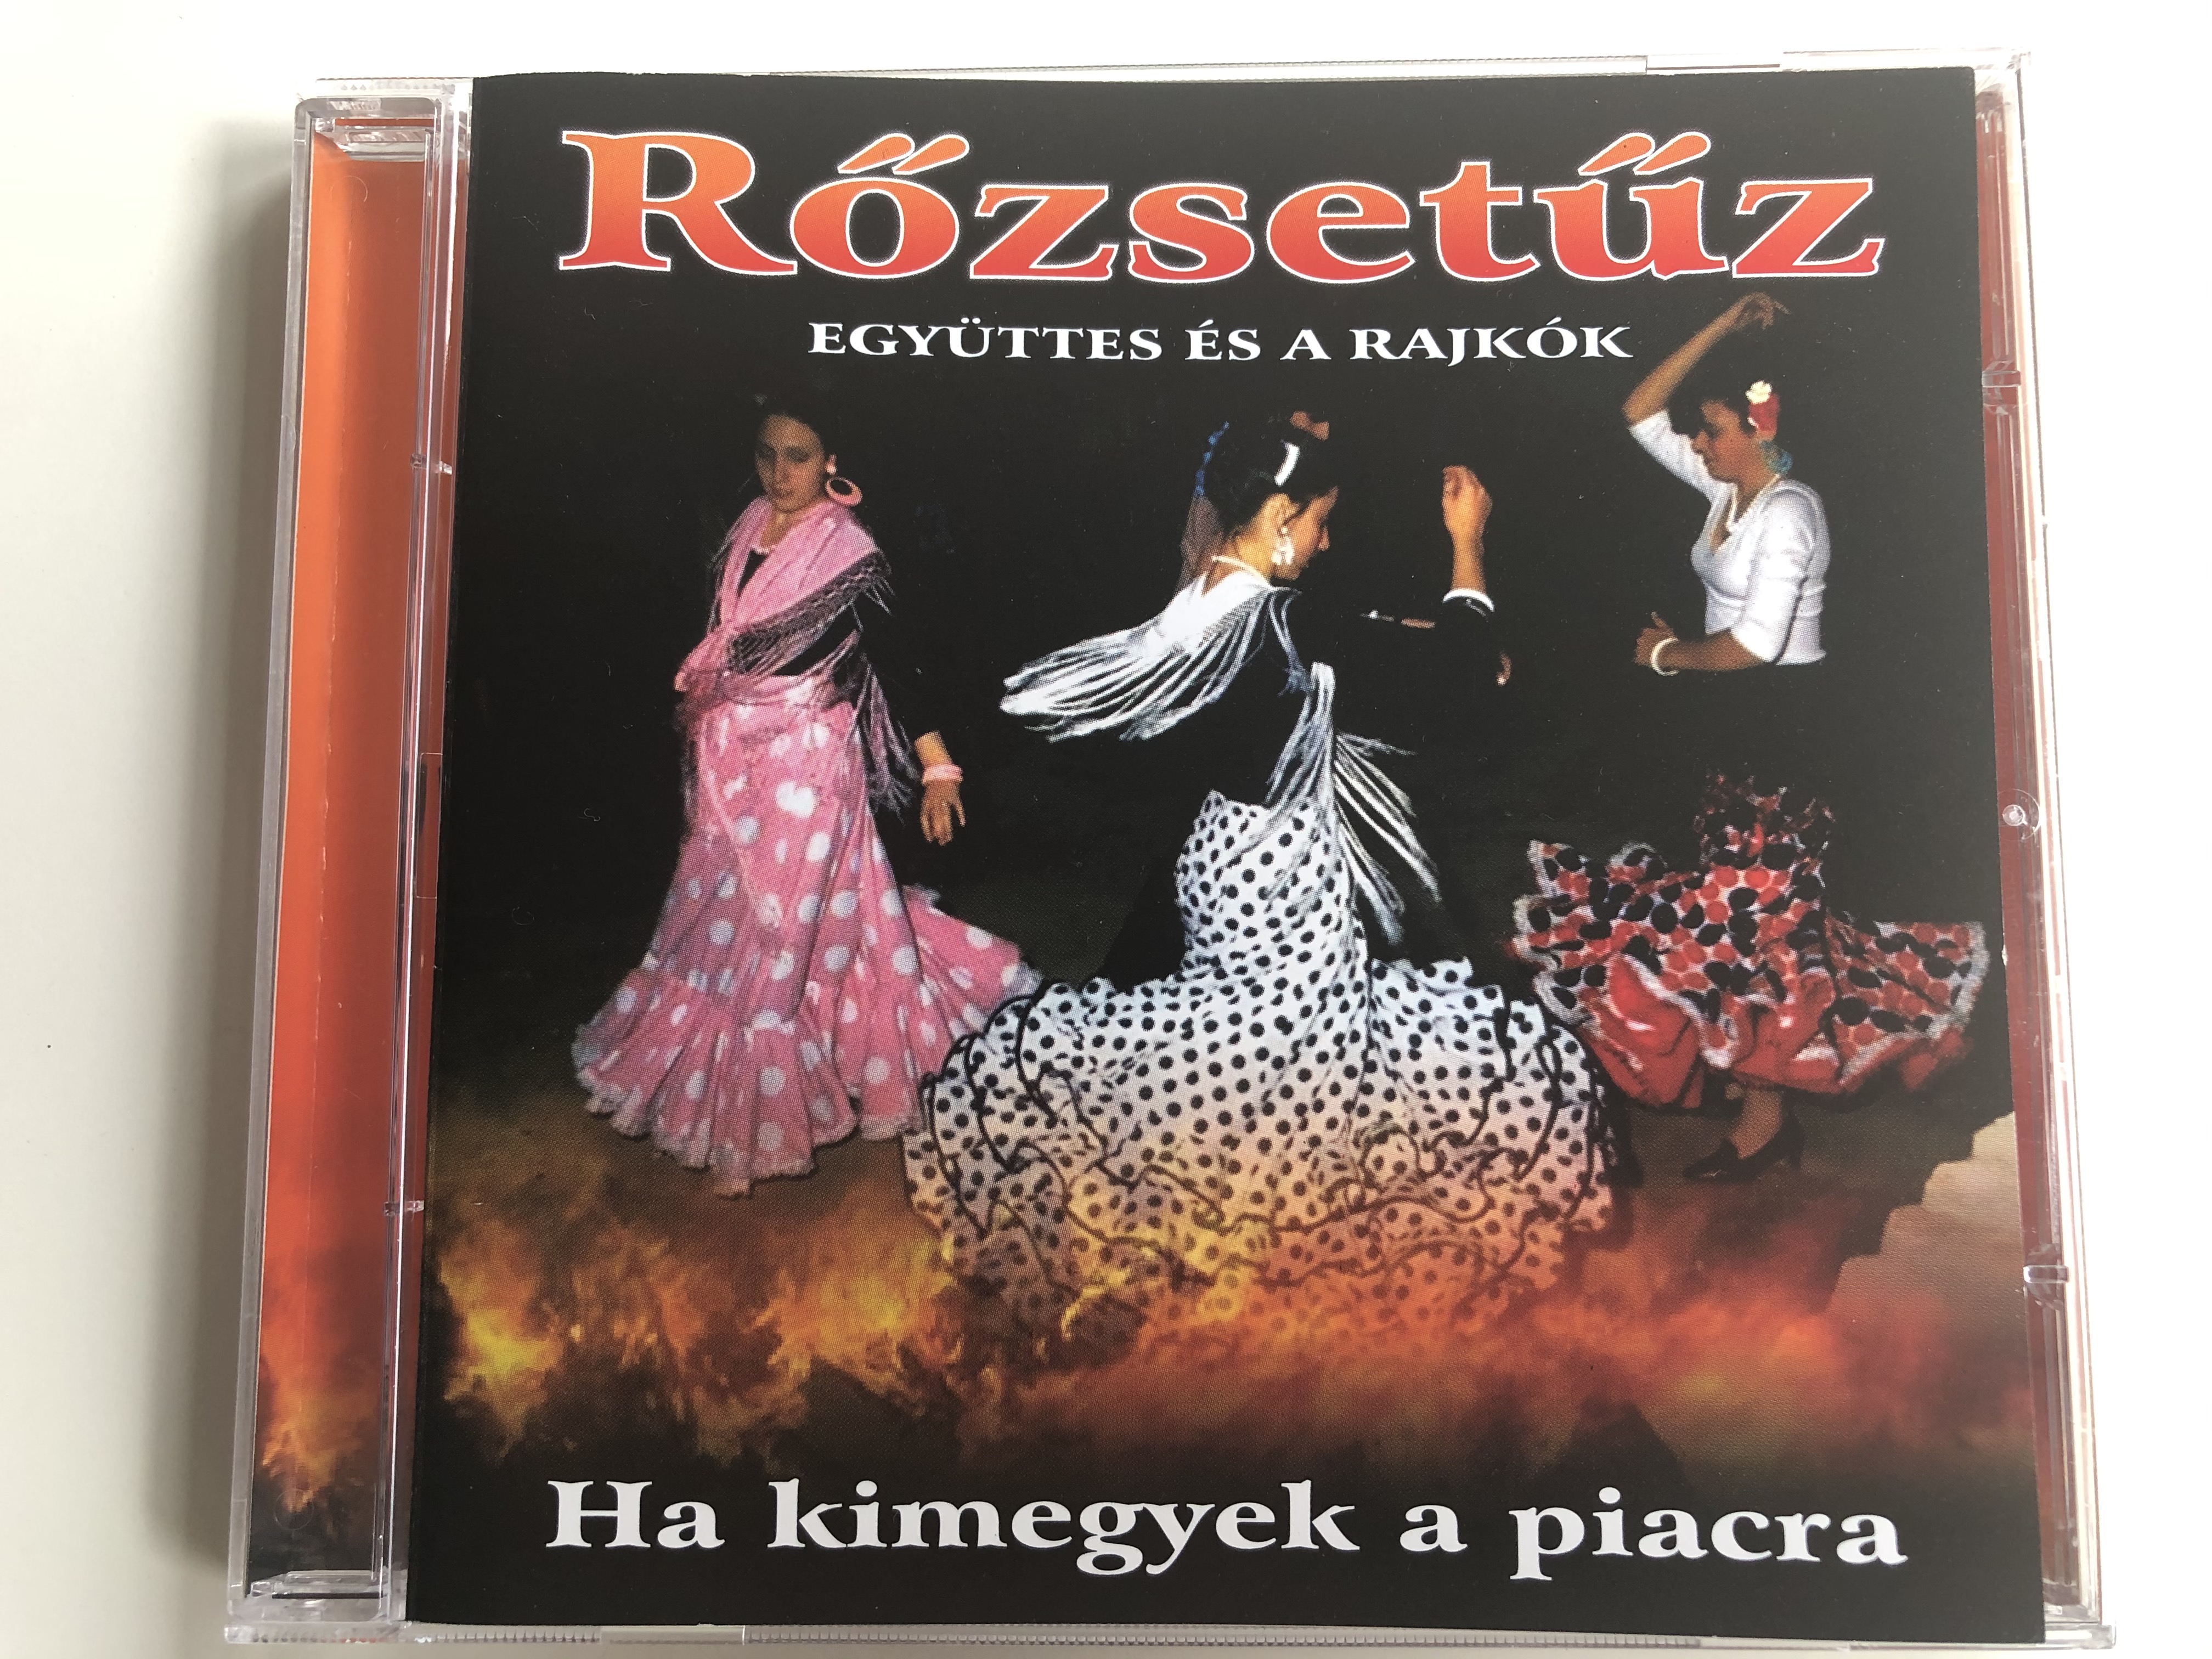 r-zset-z-egy-ttes-es-a-rajkok-ha-kimegyek-a-piacra-ar-na-holding-audio-cd-arcd-2118-1-.jpg